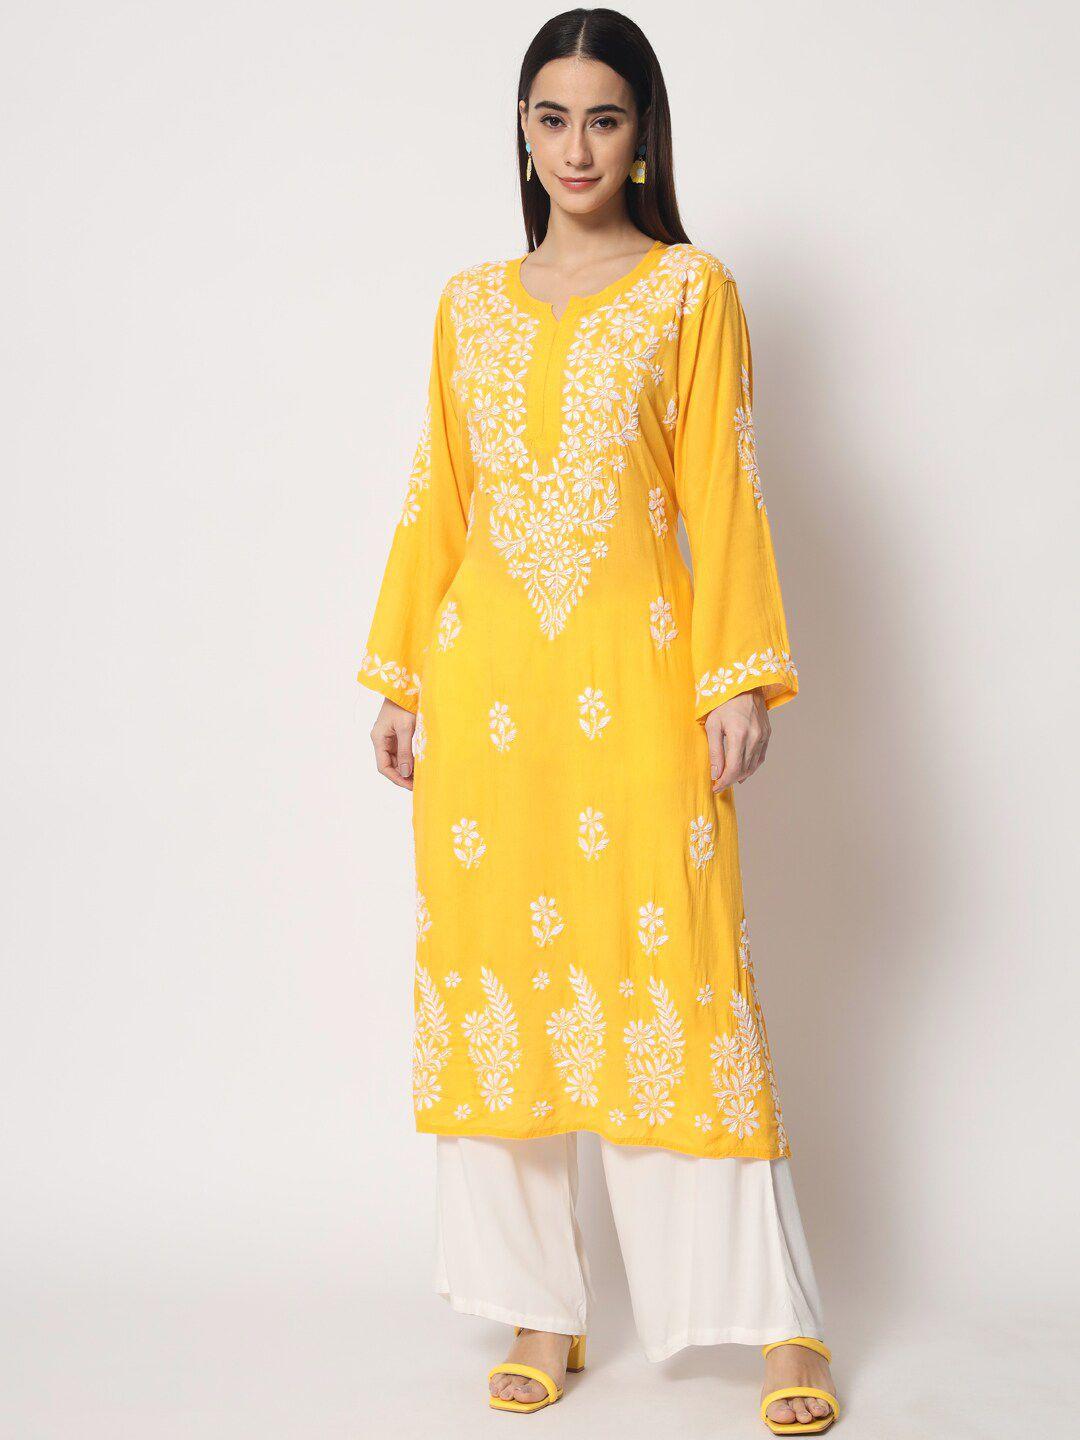 paramount-chikan-women-yellow-chikankari-hand-embroidered-modal-straight-kurta